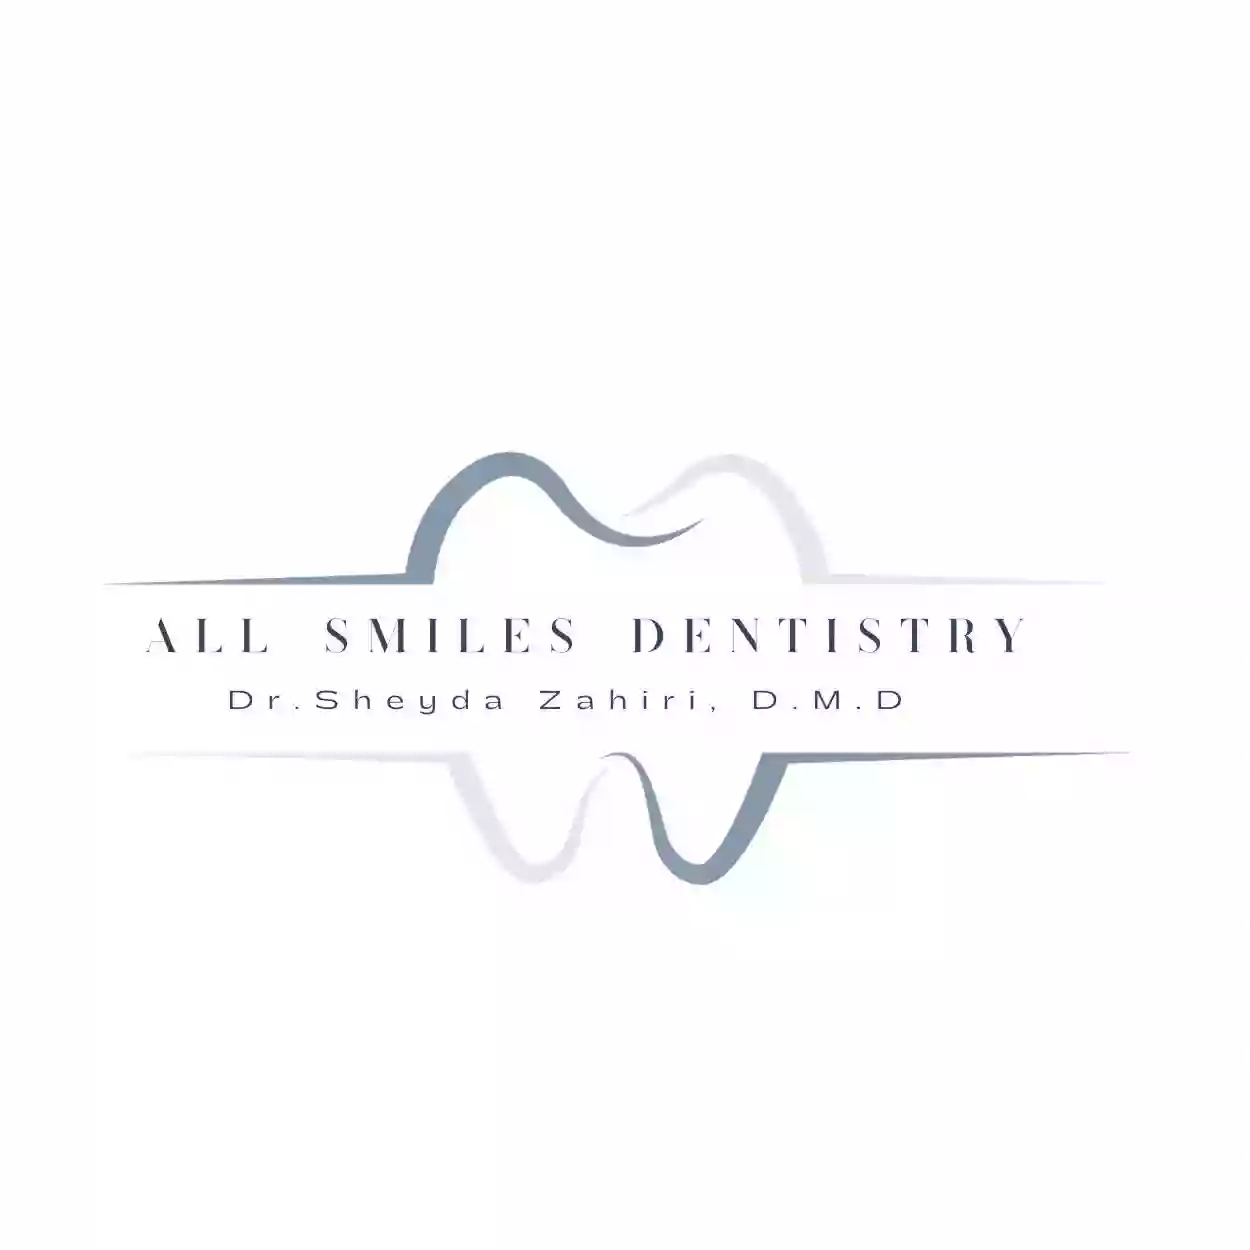 All Smiles Dentistry by: Dr. Sheyda Zahiri